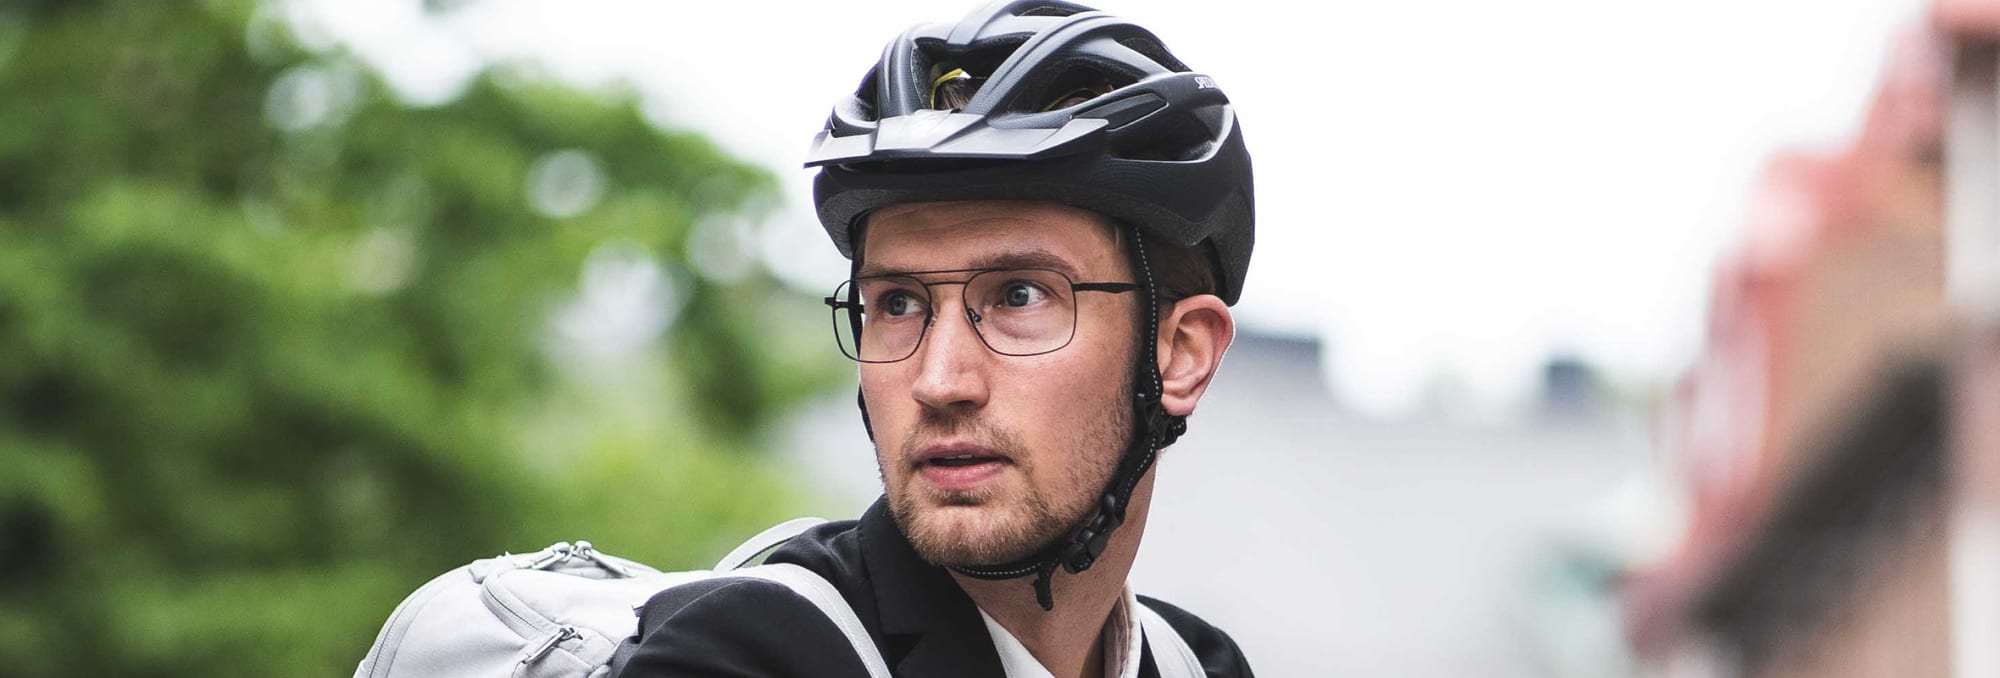 Man på cykel med hjälm och glasögon.